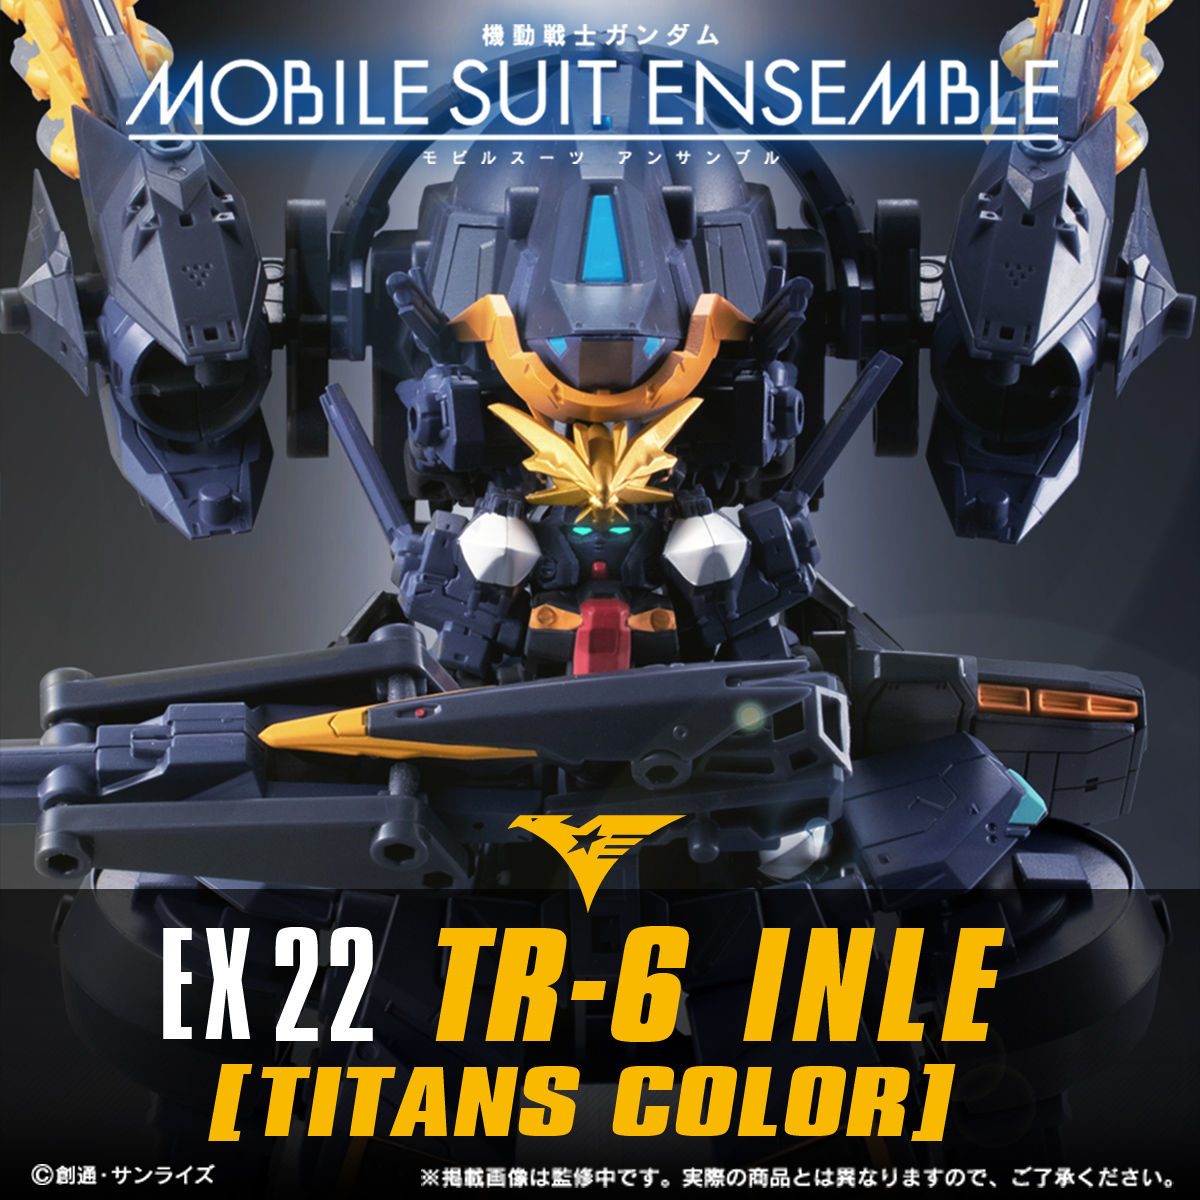 モビルスーツアンサンブル EX22 TR-6 INLE TITANS COLOR www